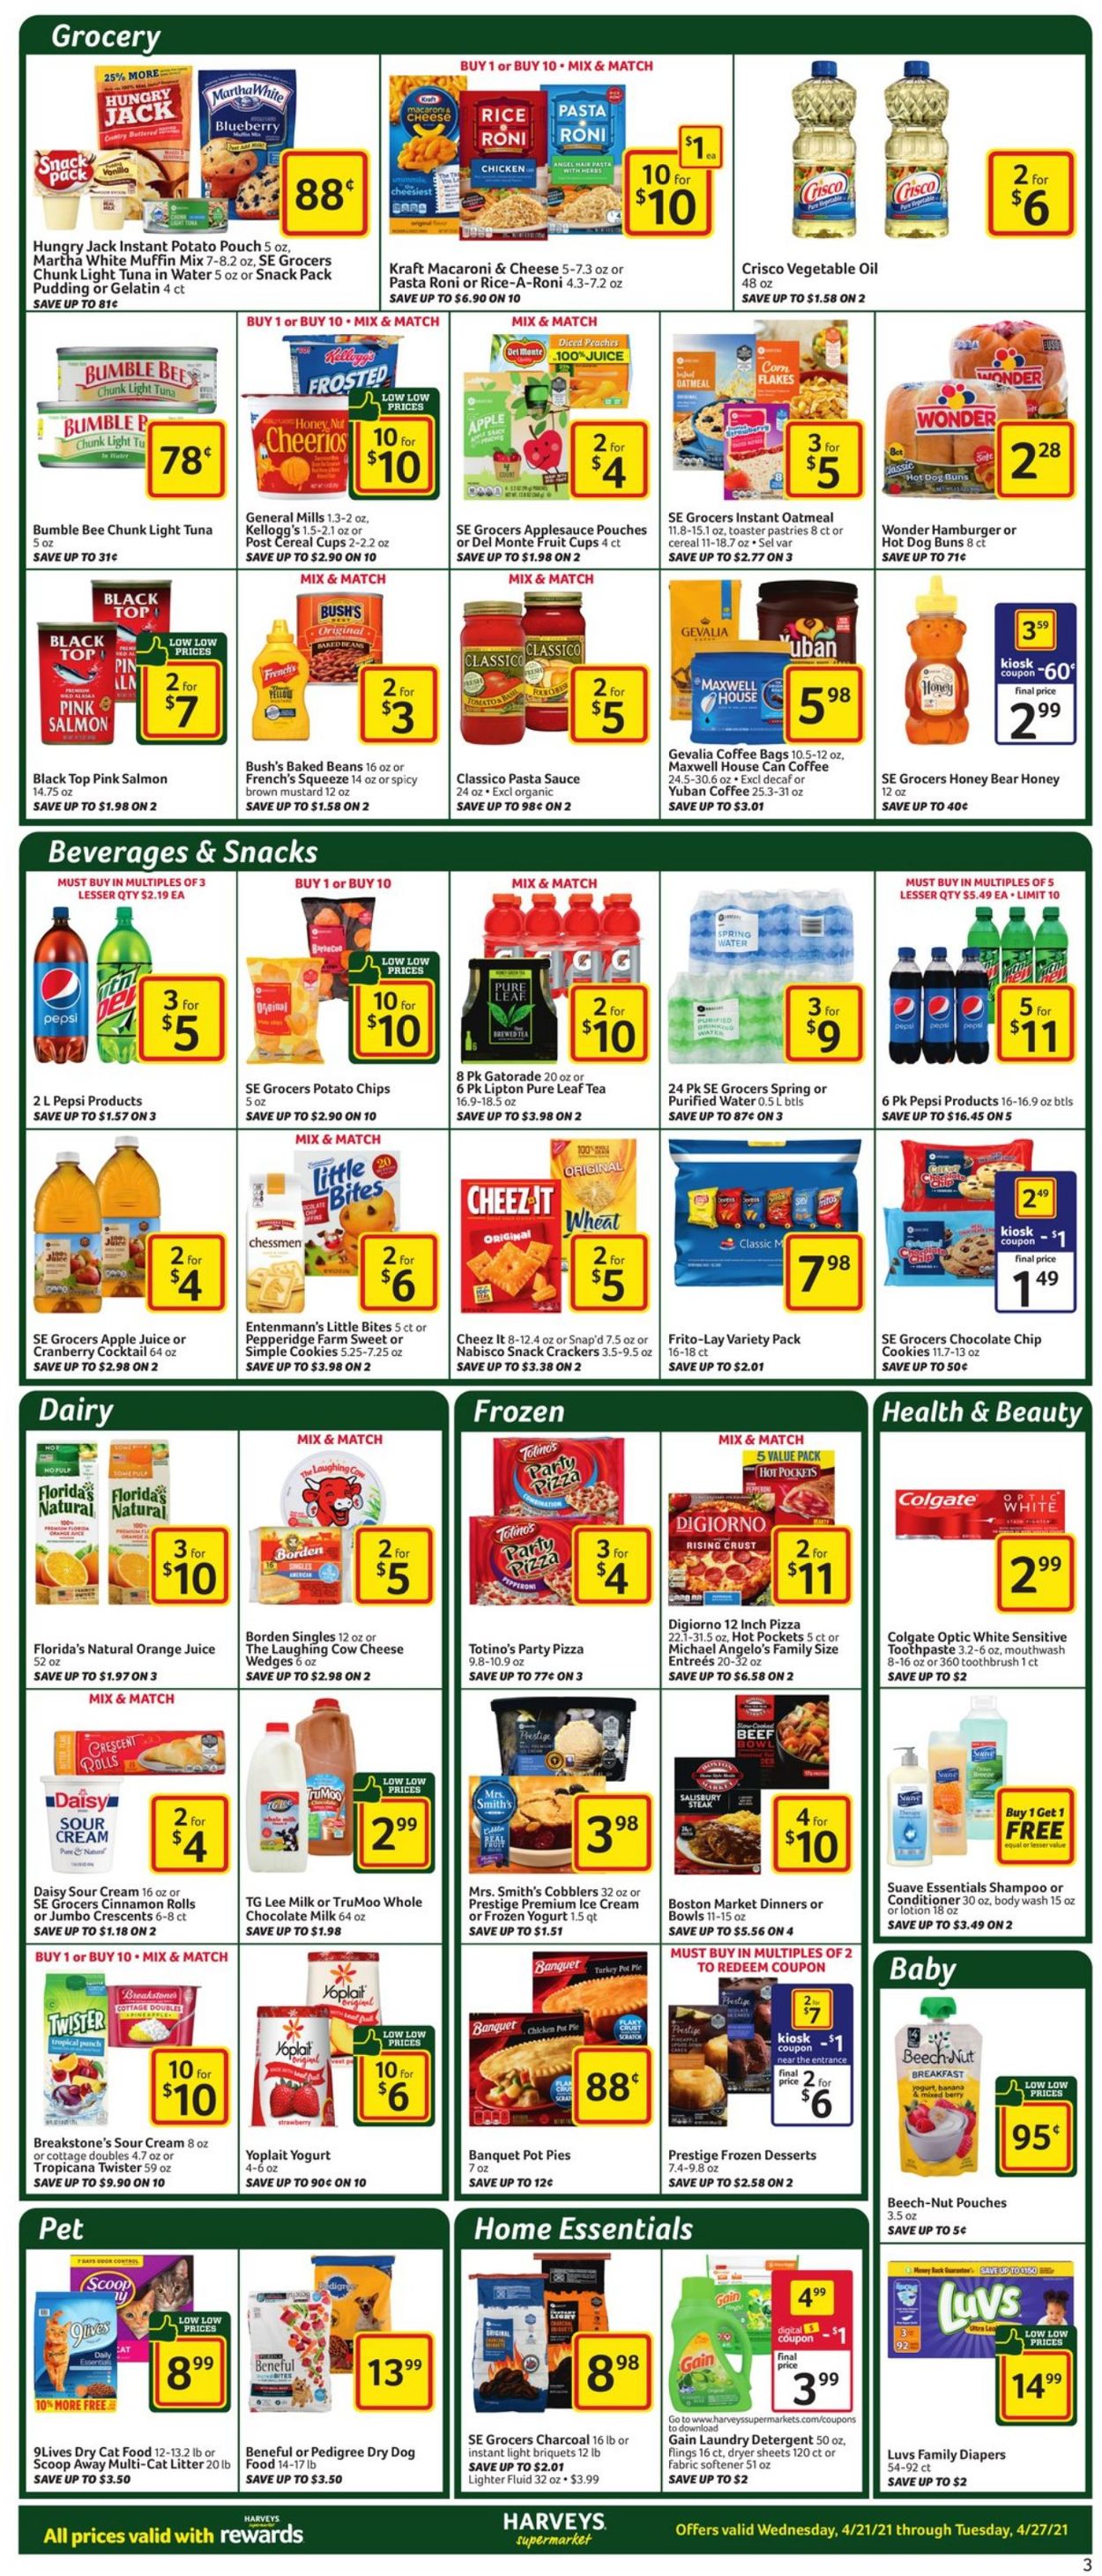 Catalogue Harveys Supermarket from 04/21/2021